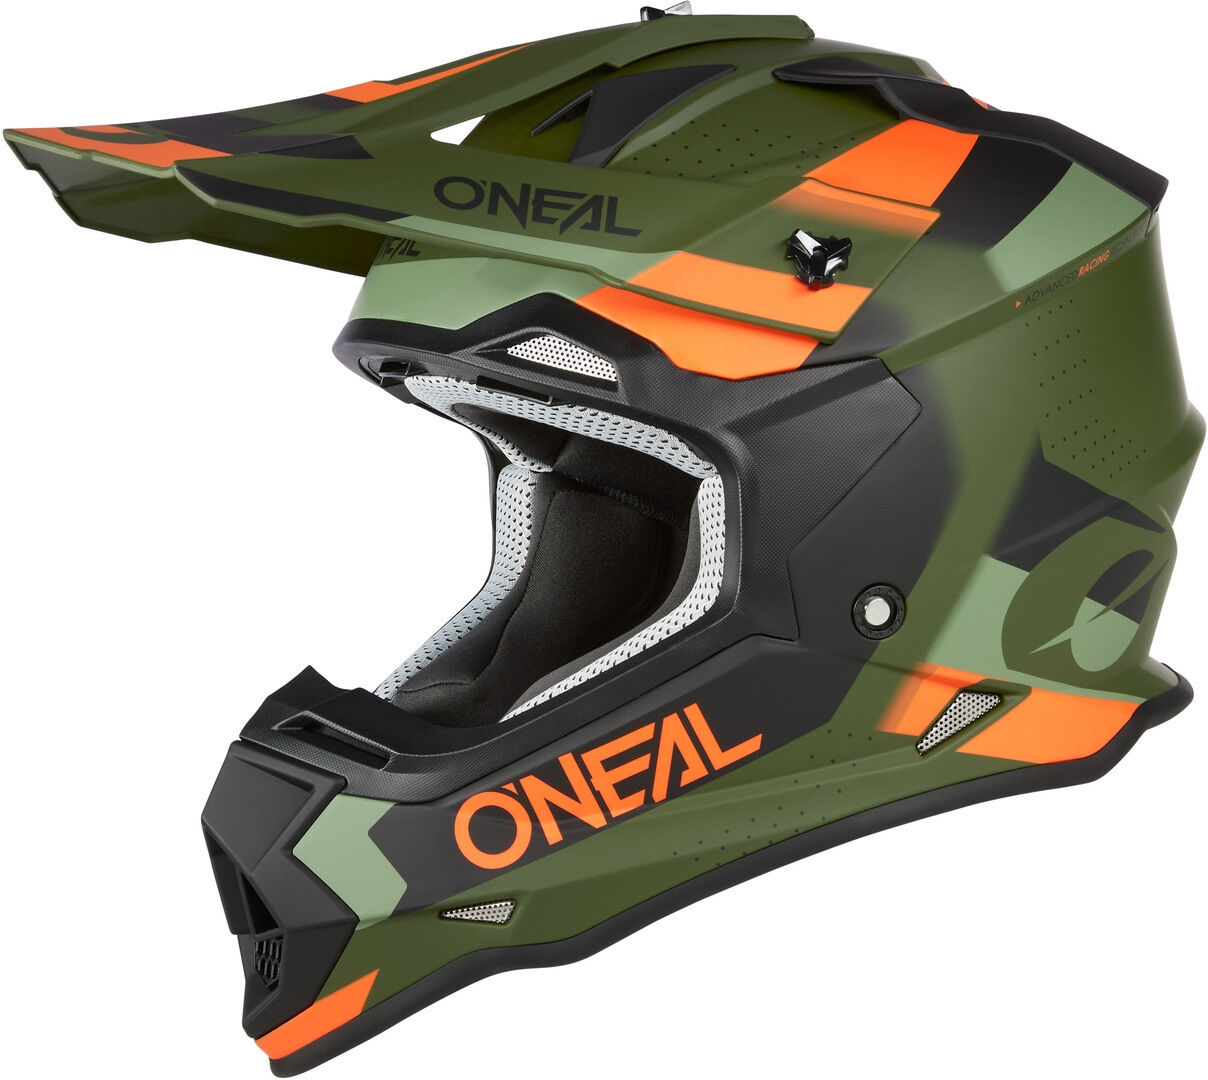 Oneal 2Series Spyde V23 Casco de motocross - Negro Verde Naranja (M)